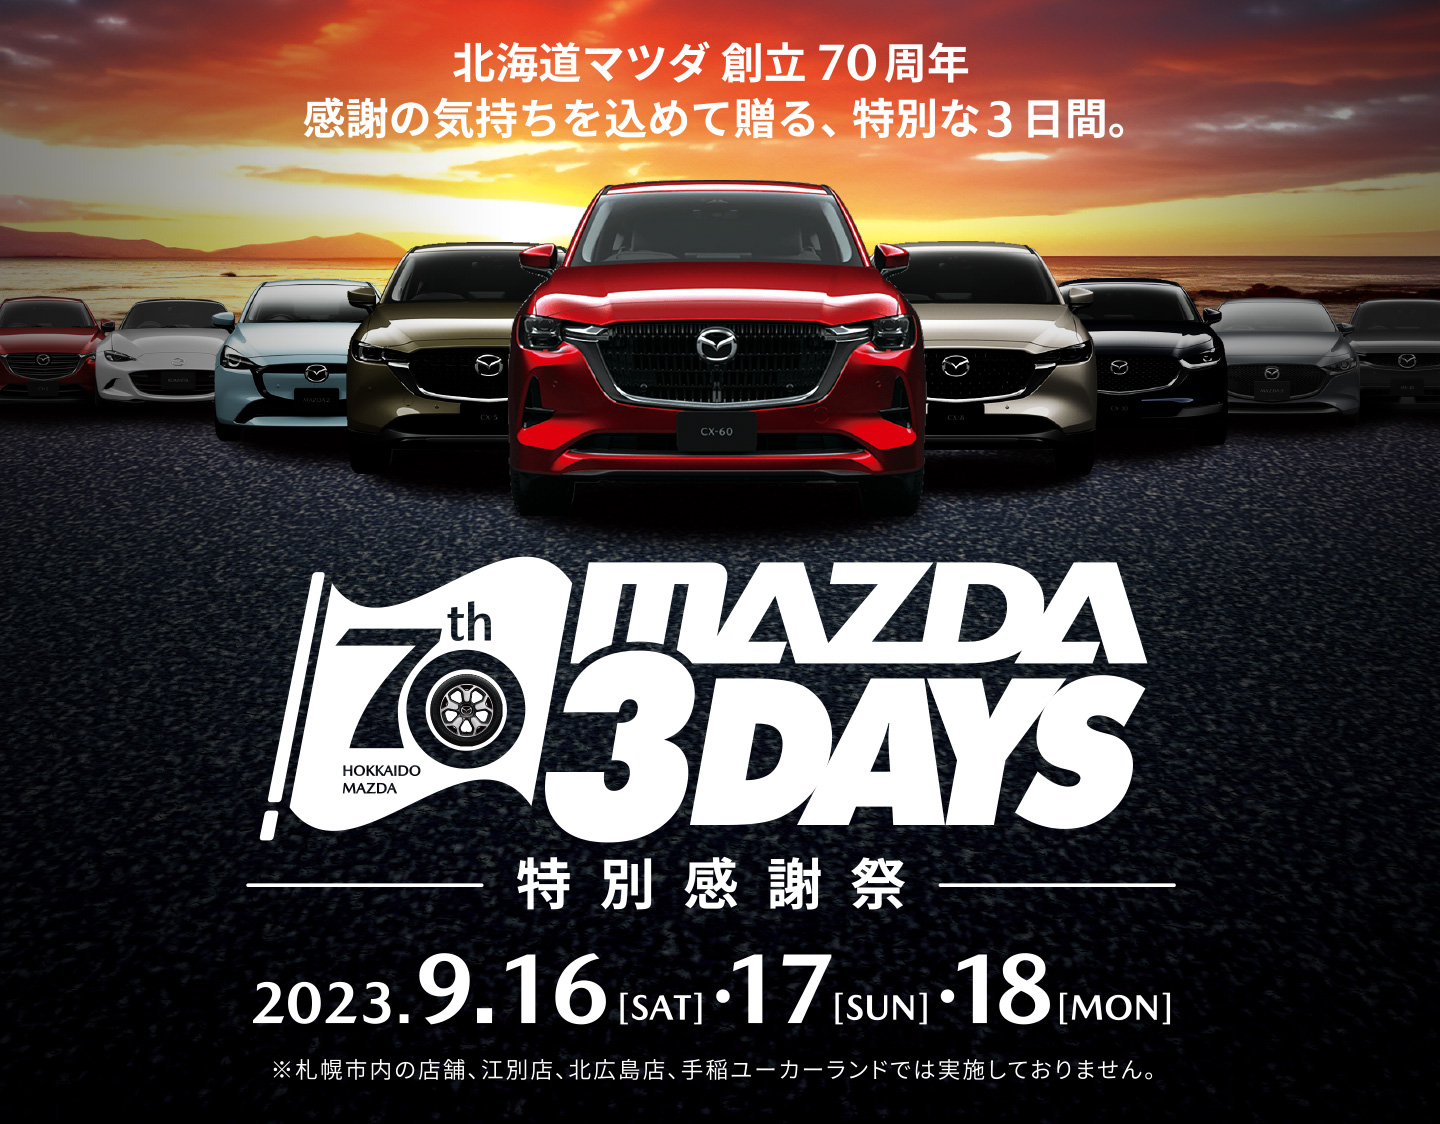 北海道マツダ創立70周年 感謝の気持ちを込めて贈る、特別な3日間。MAZDA 3DAYS 特別感謝祭